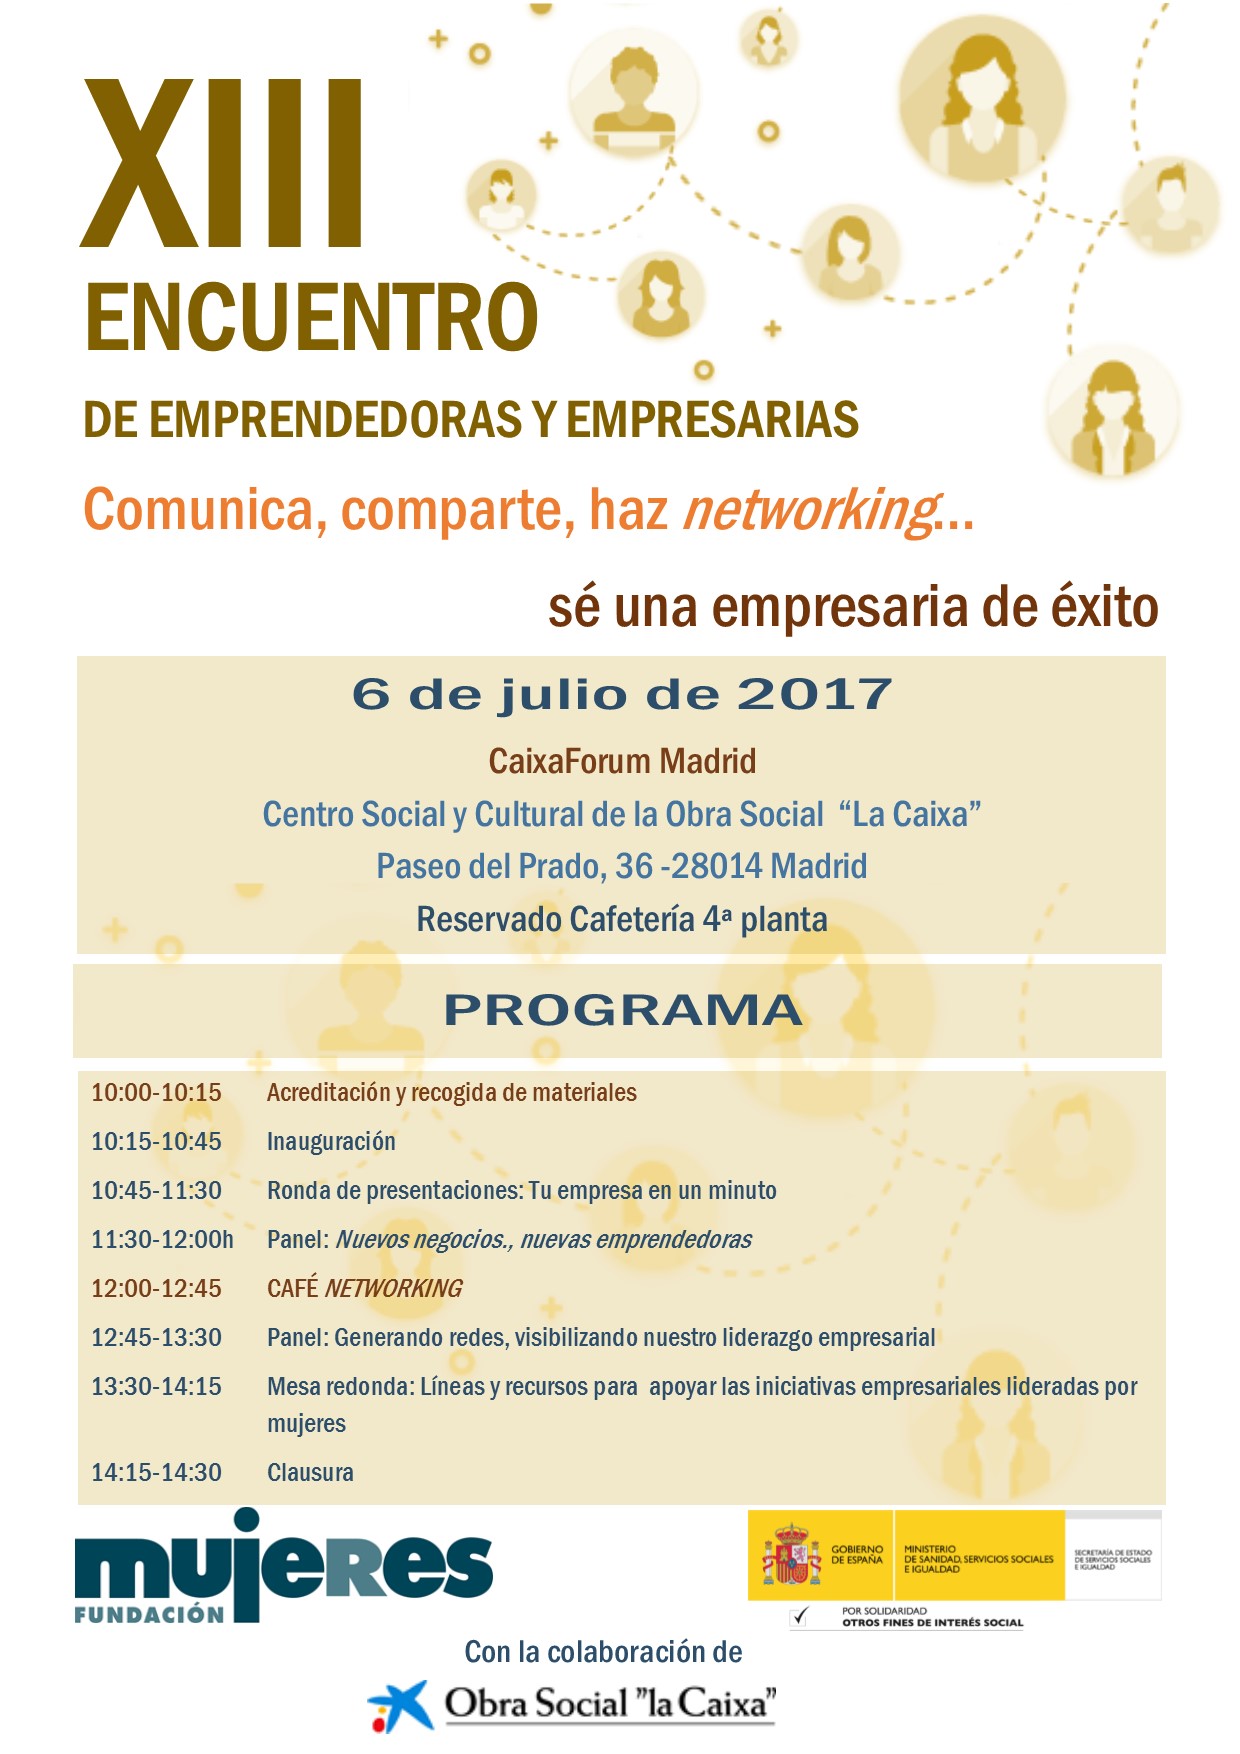 XIII Encuentro de emprendedoras y empresarias en Madrid